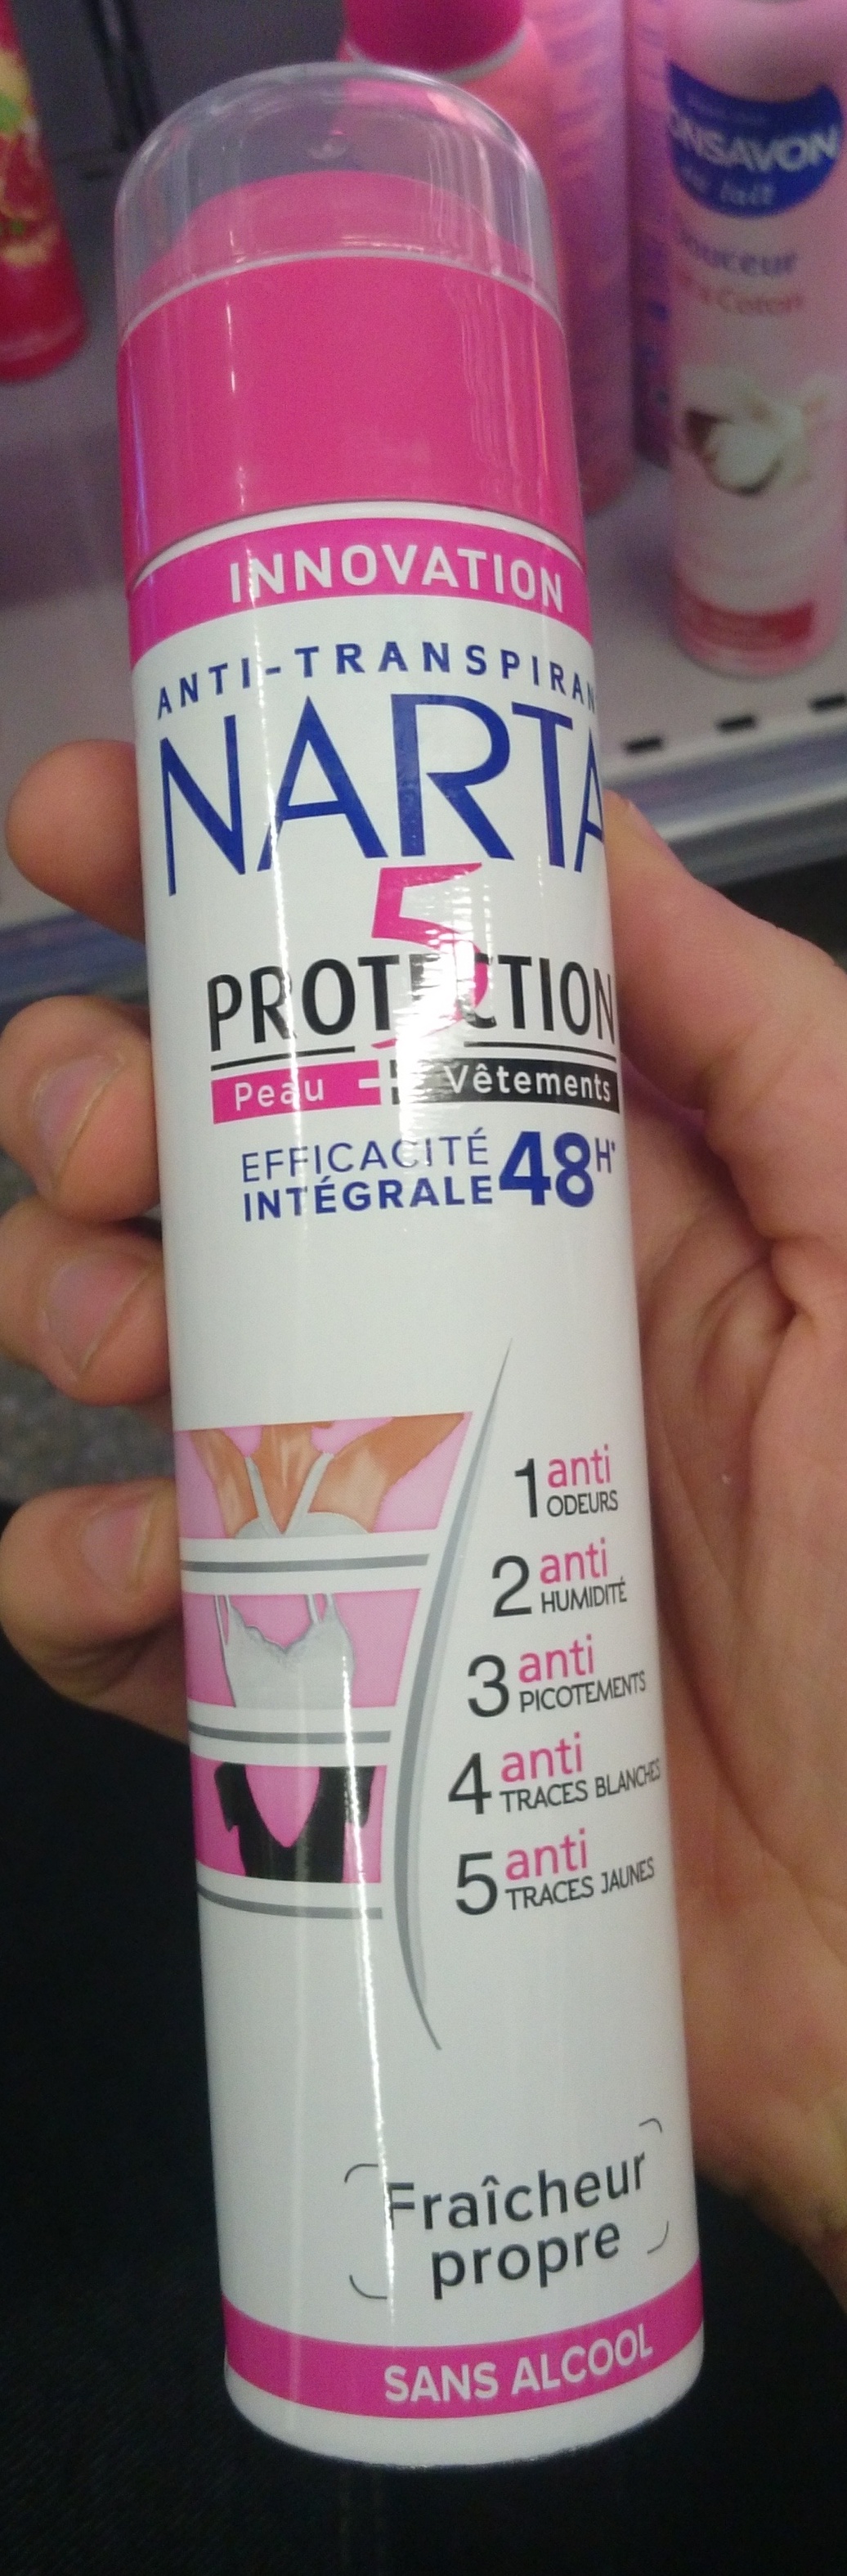 5 protections efficacité intégrale 48h - Produto - fr